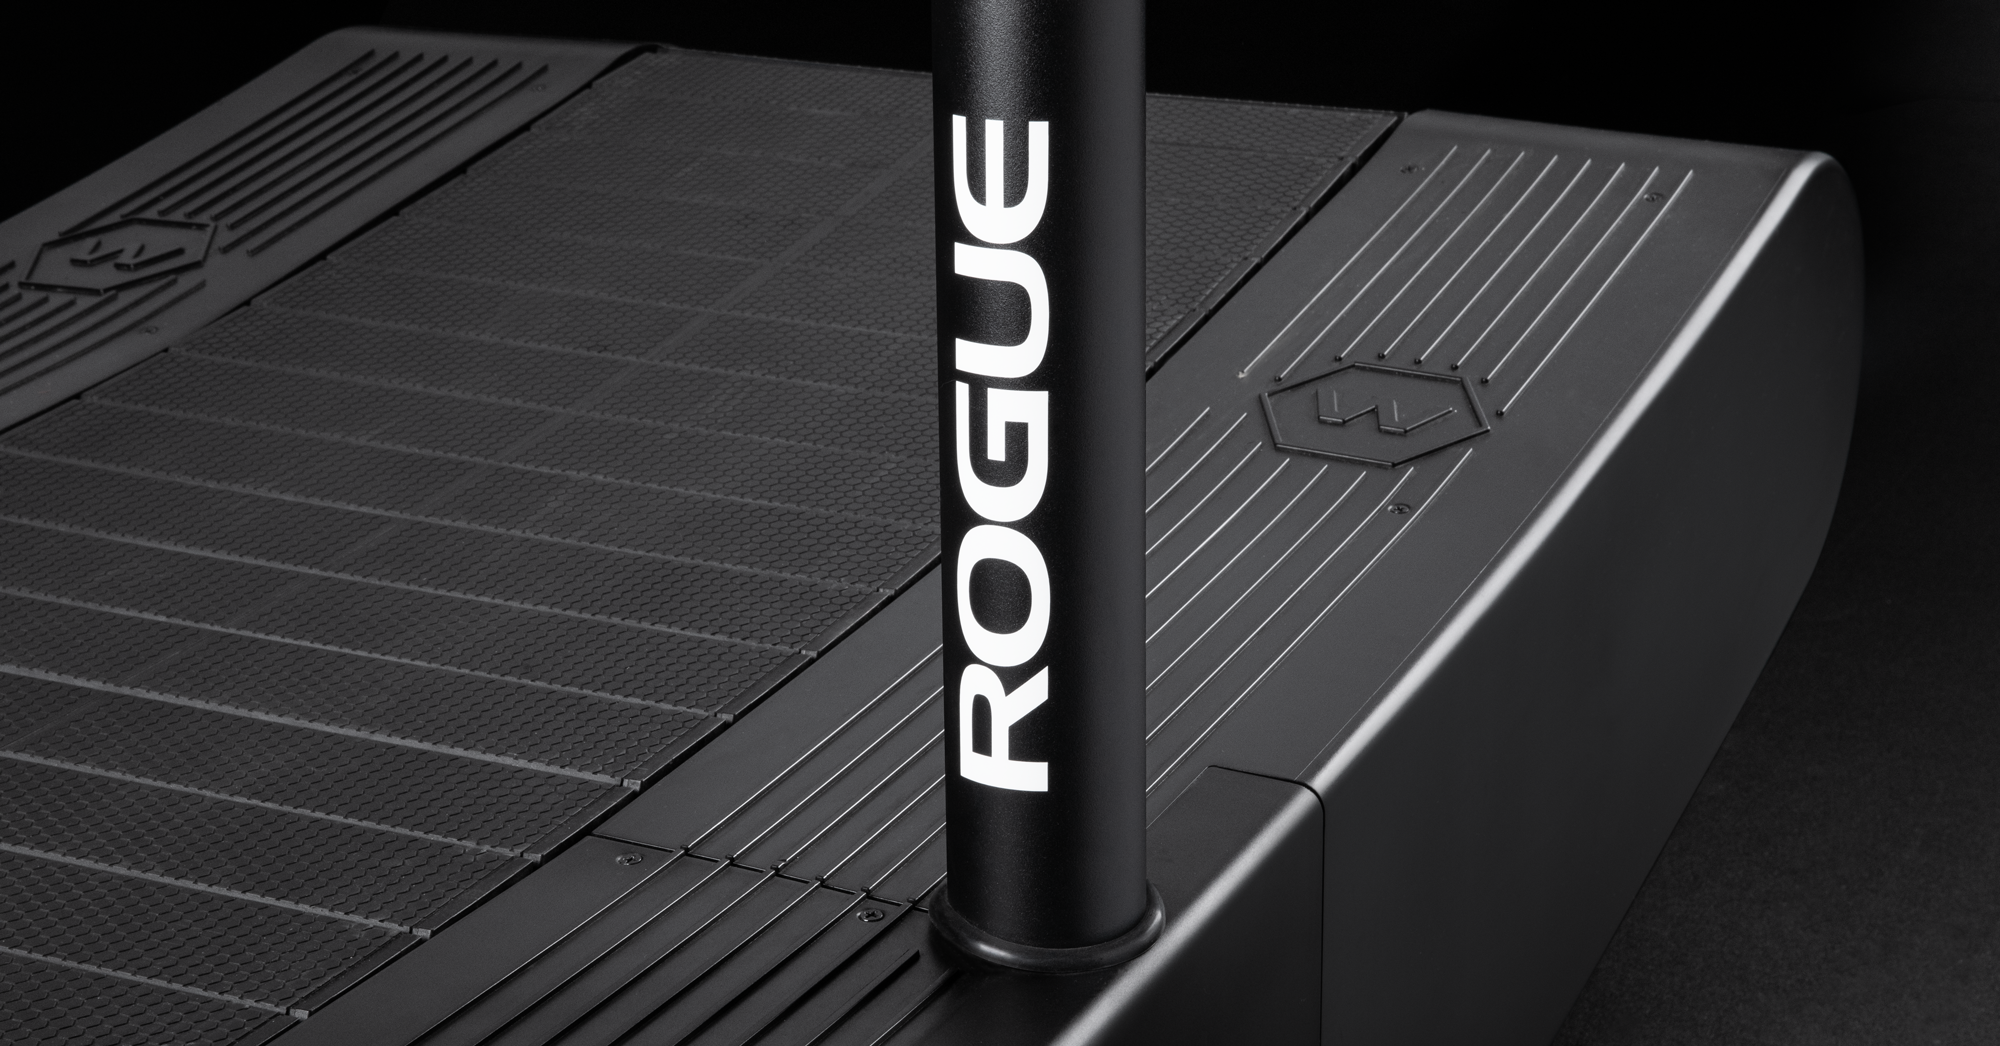 Rogue | Woodway Curve LTG Treadmill